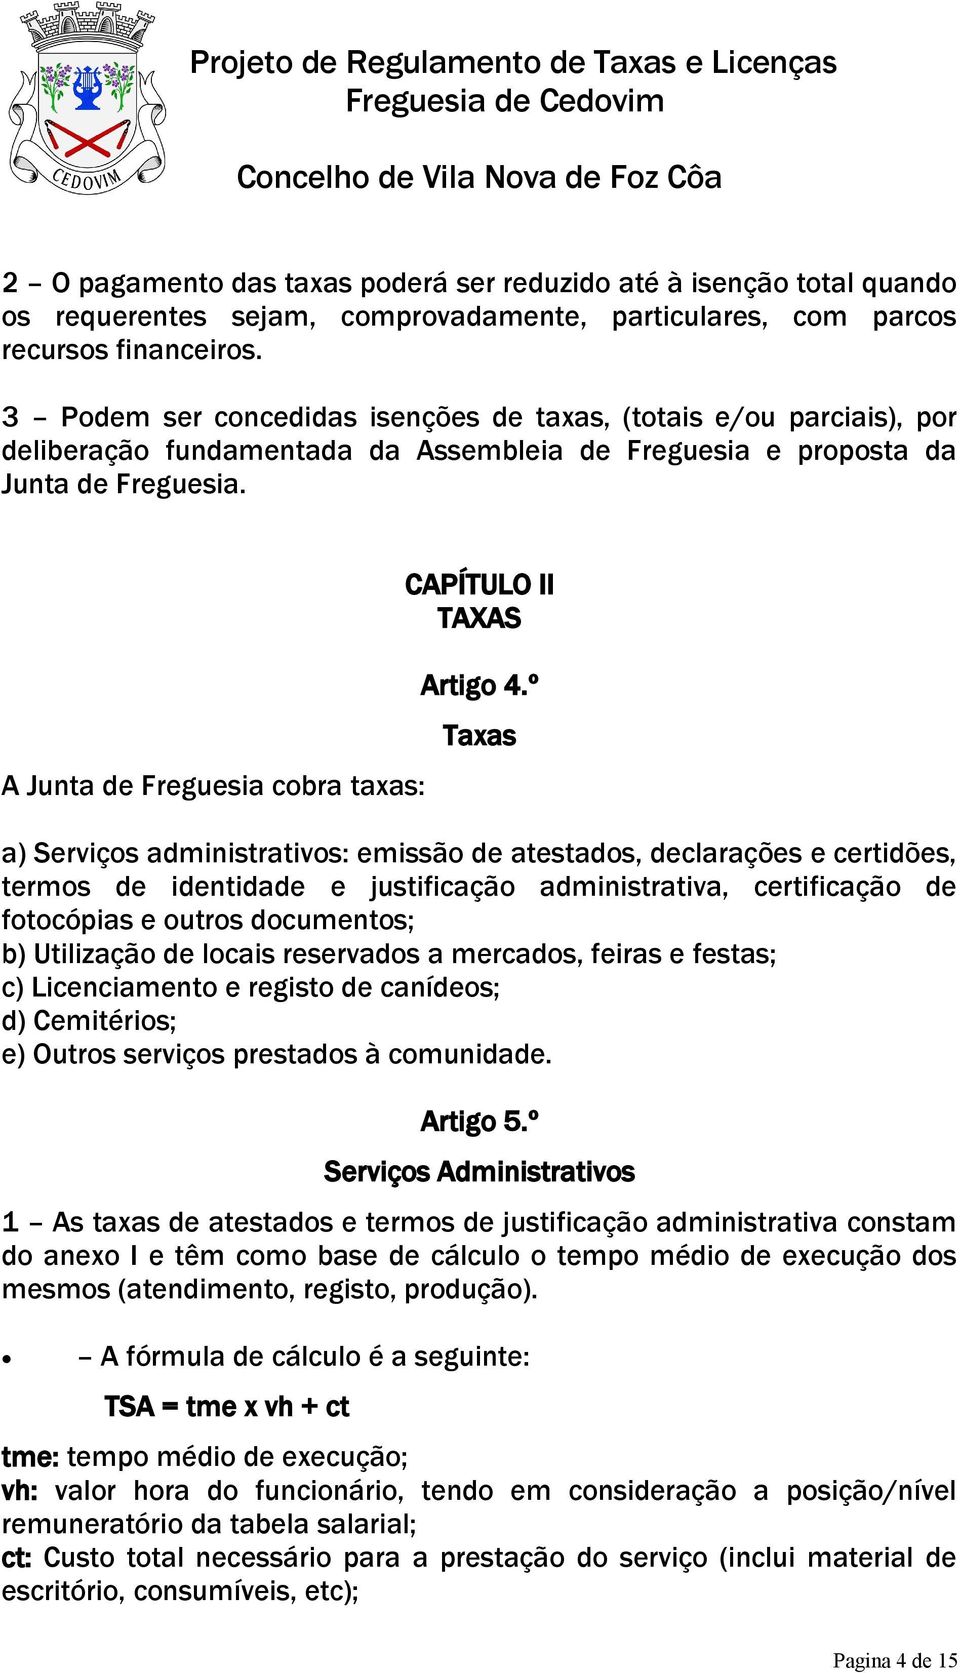 A Junta de Freguesia cobra taxas: CAPÍTULO II TAXAS Artigo 4.